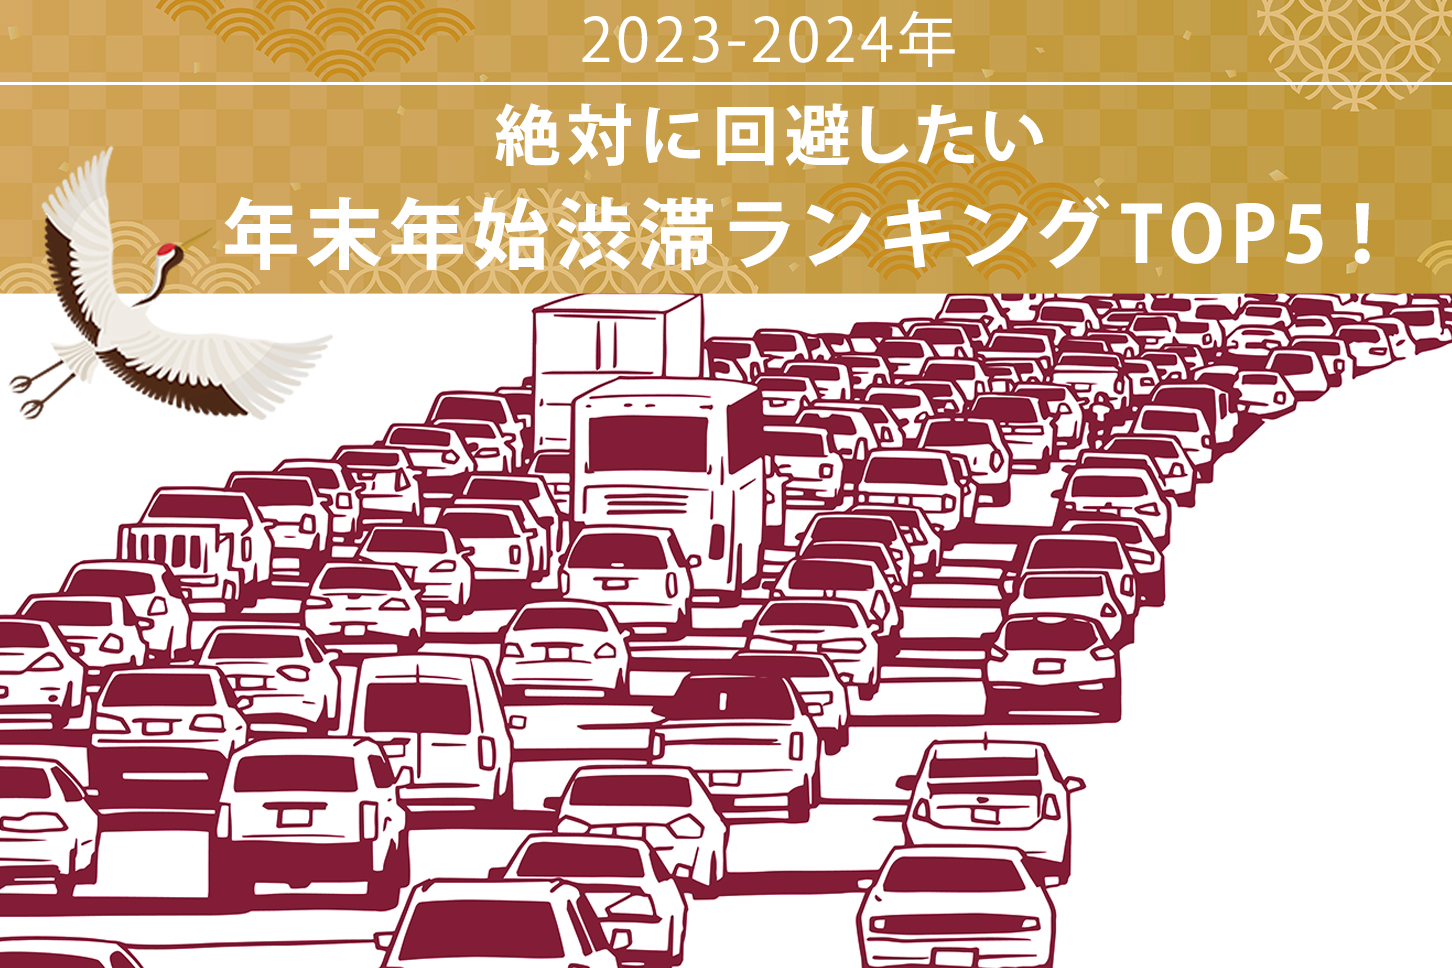 絶対に回避したい、年末年始渋滞ランキング TOP5！【年末年始 渋滞予測2023-2024】